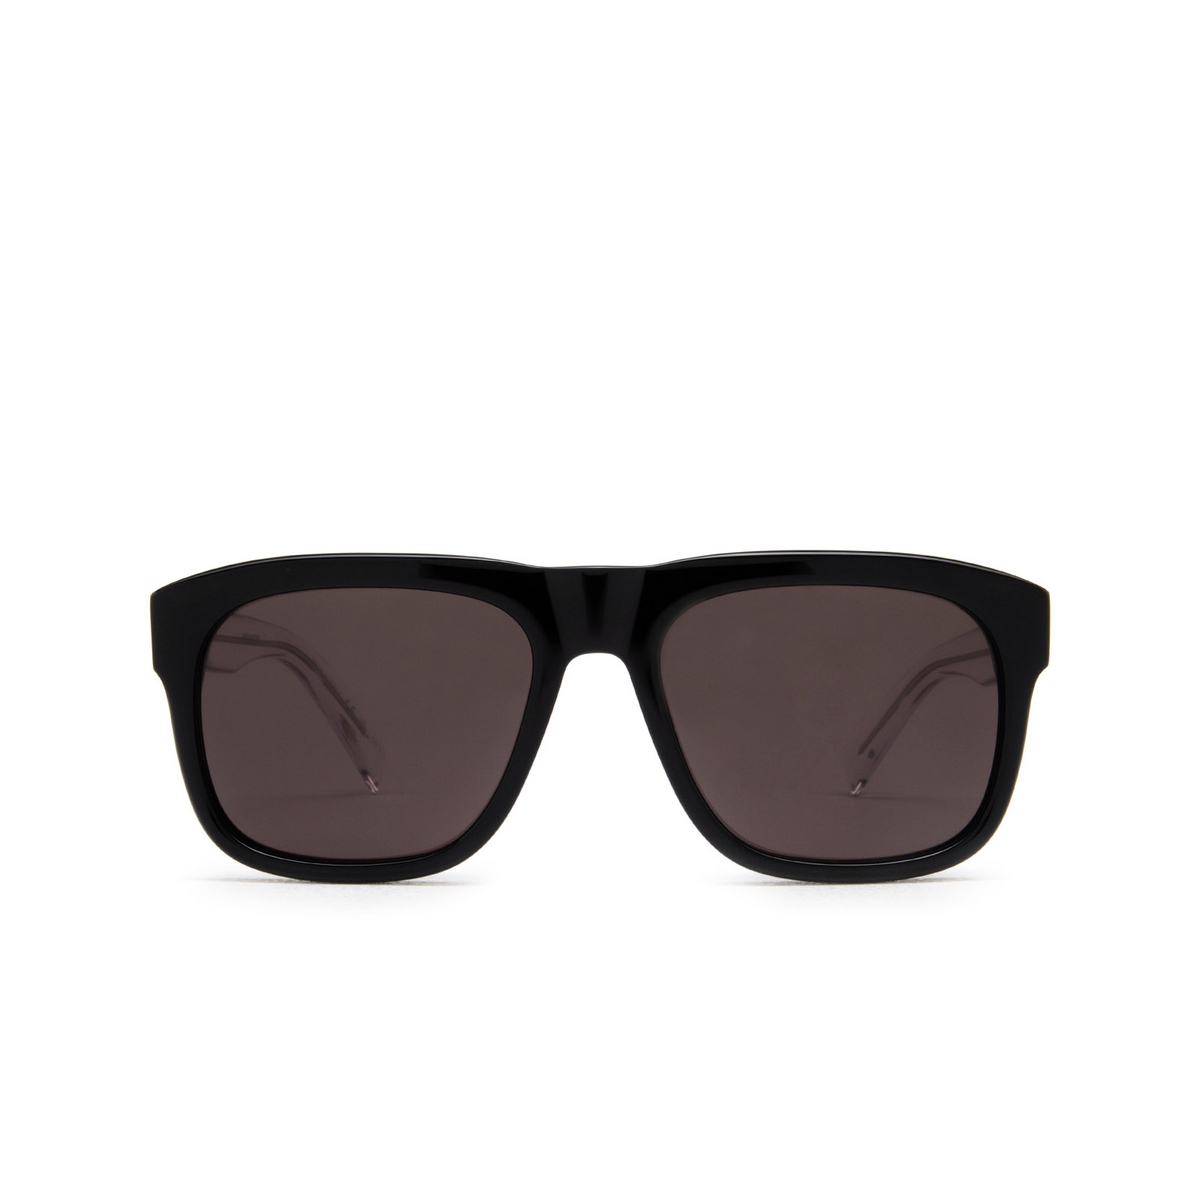 Saint Laurent SL 558 Sunglasses 001 Black - front view